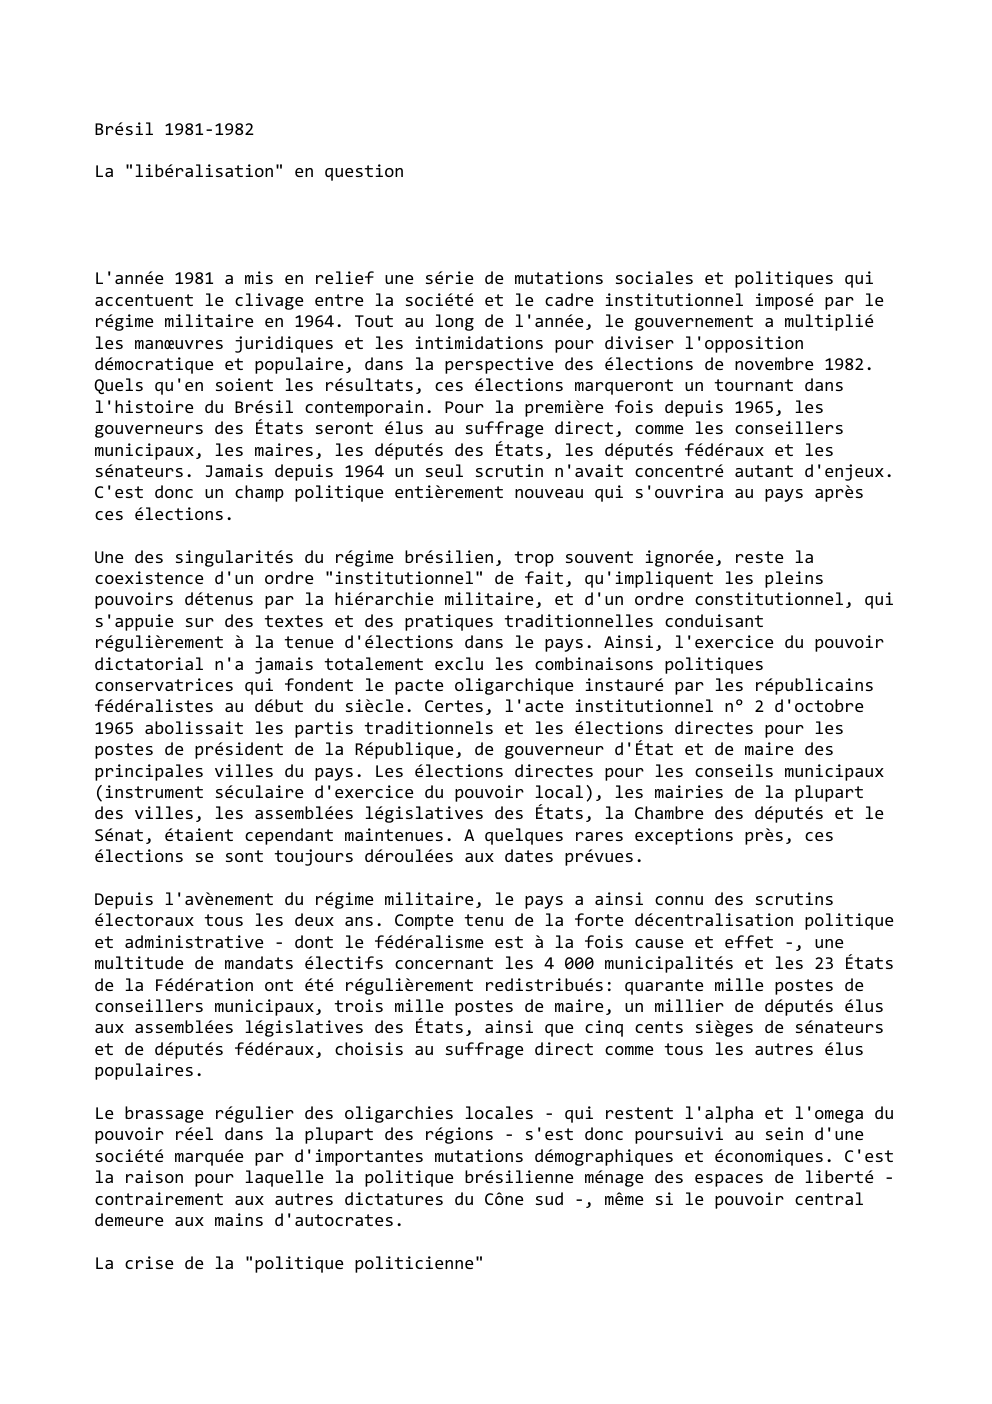 Prévisualisation du document Brésil 1981-1982
La "libéralisation" en question

L'année 1981 a mis en relief une série de mutations sociales et politiques qui...